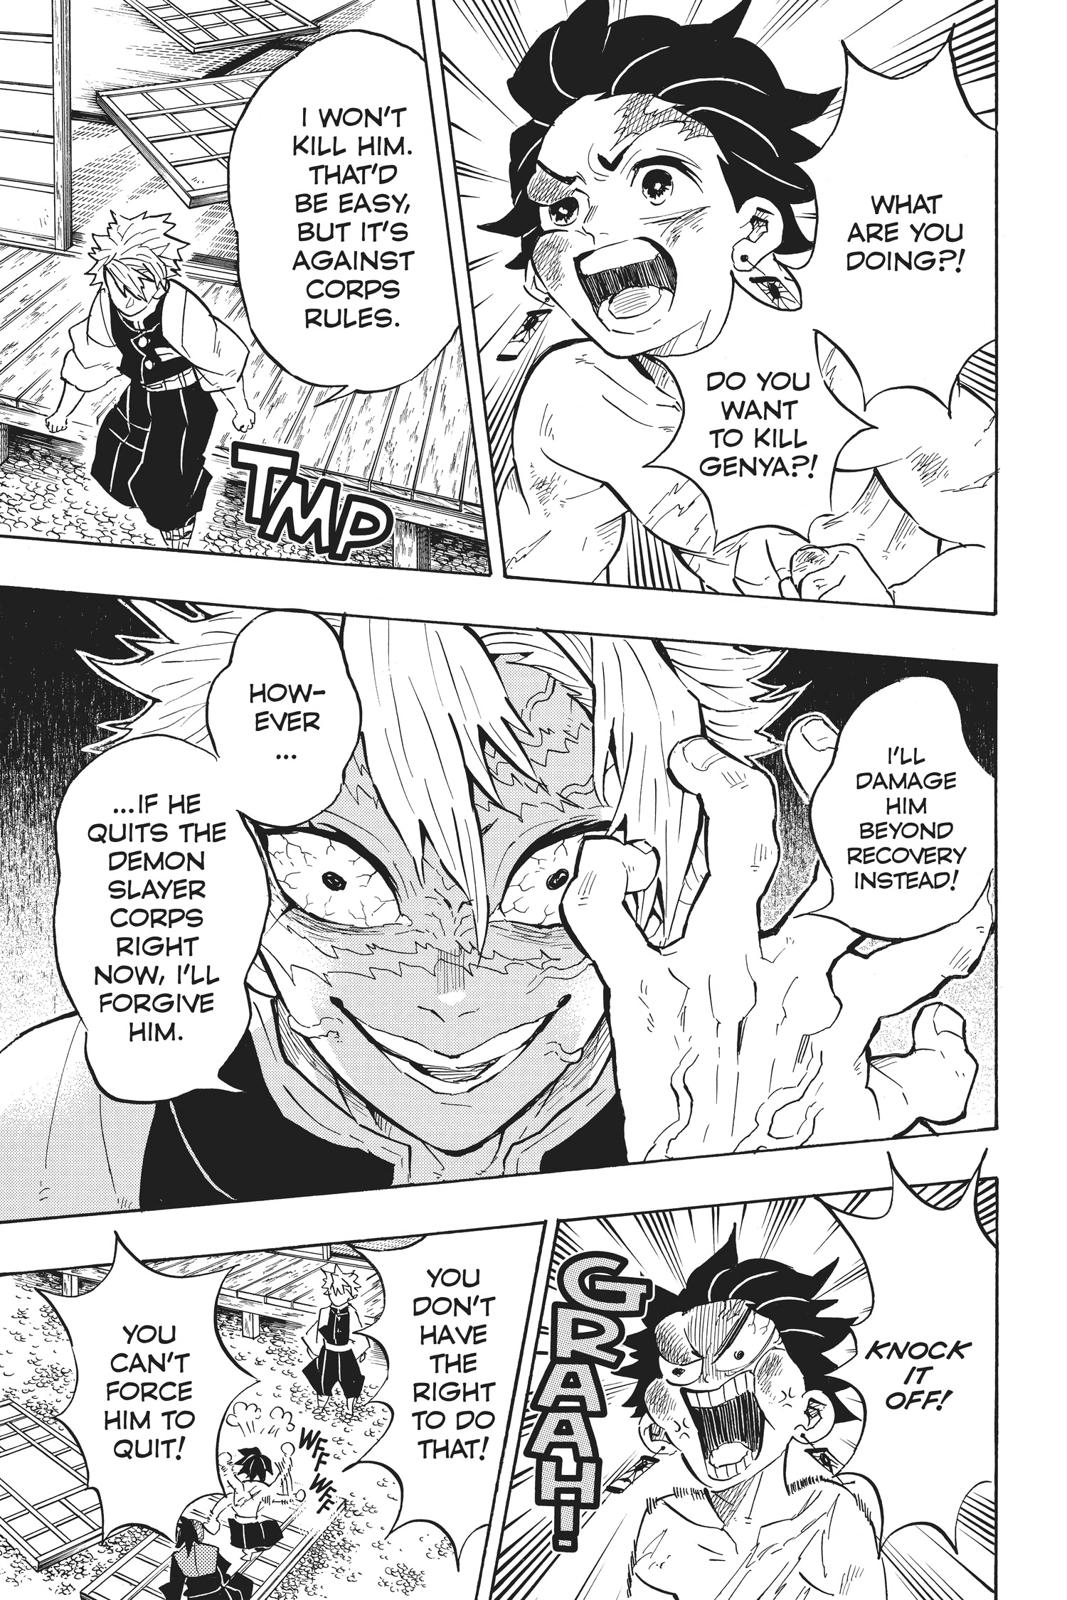 Demon Slayer Manga Manga Chapter - 133 - image 8